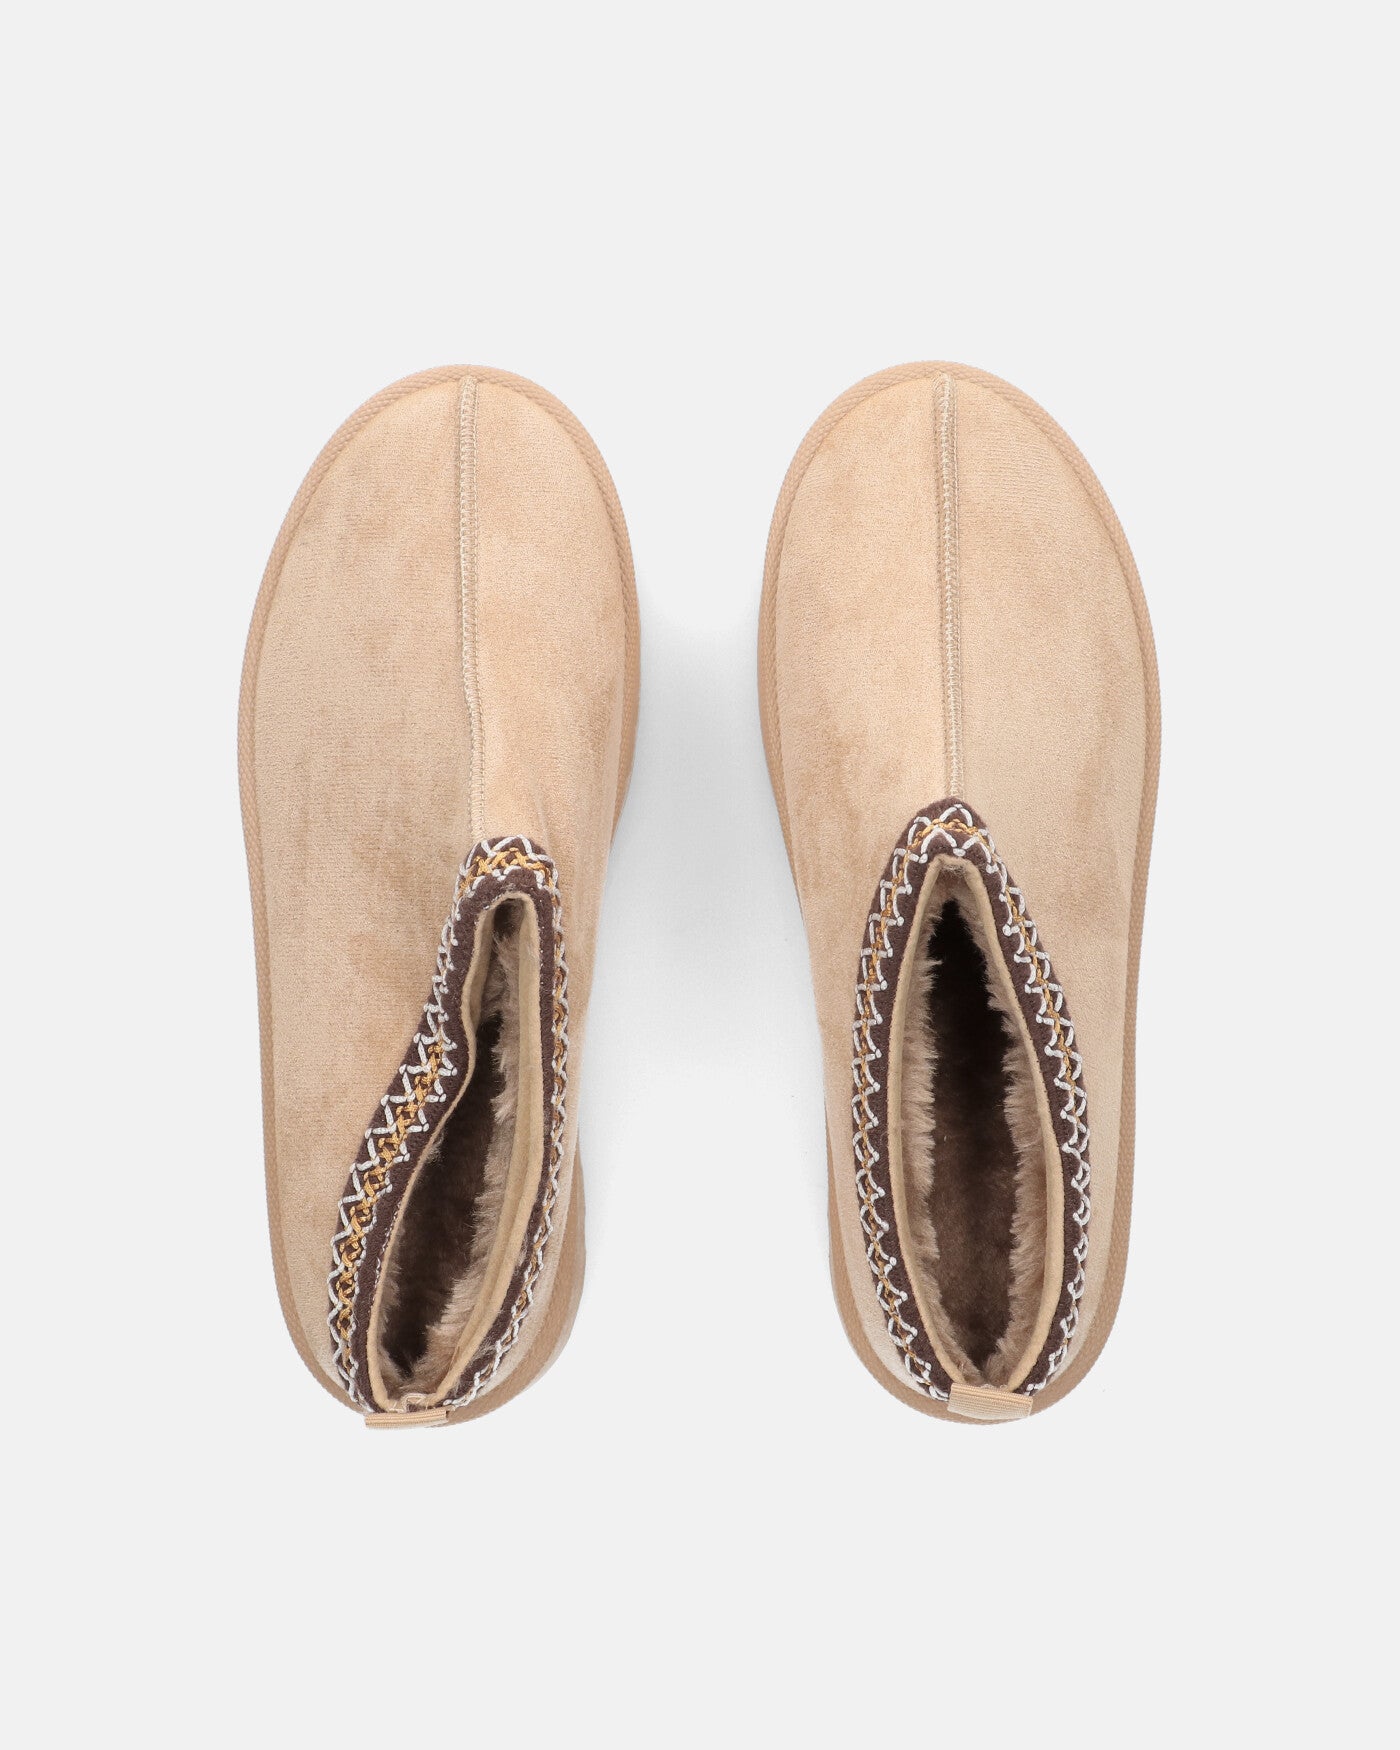 ZELDA - beige suede platform slippers